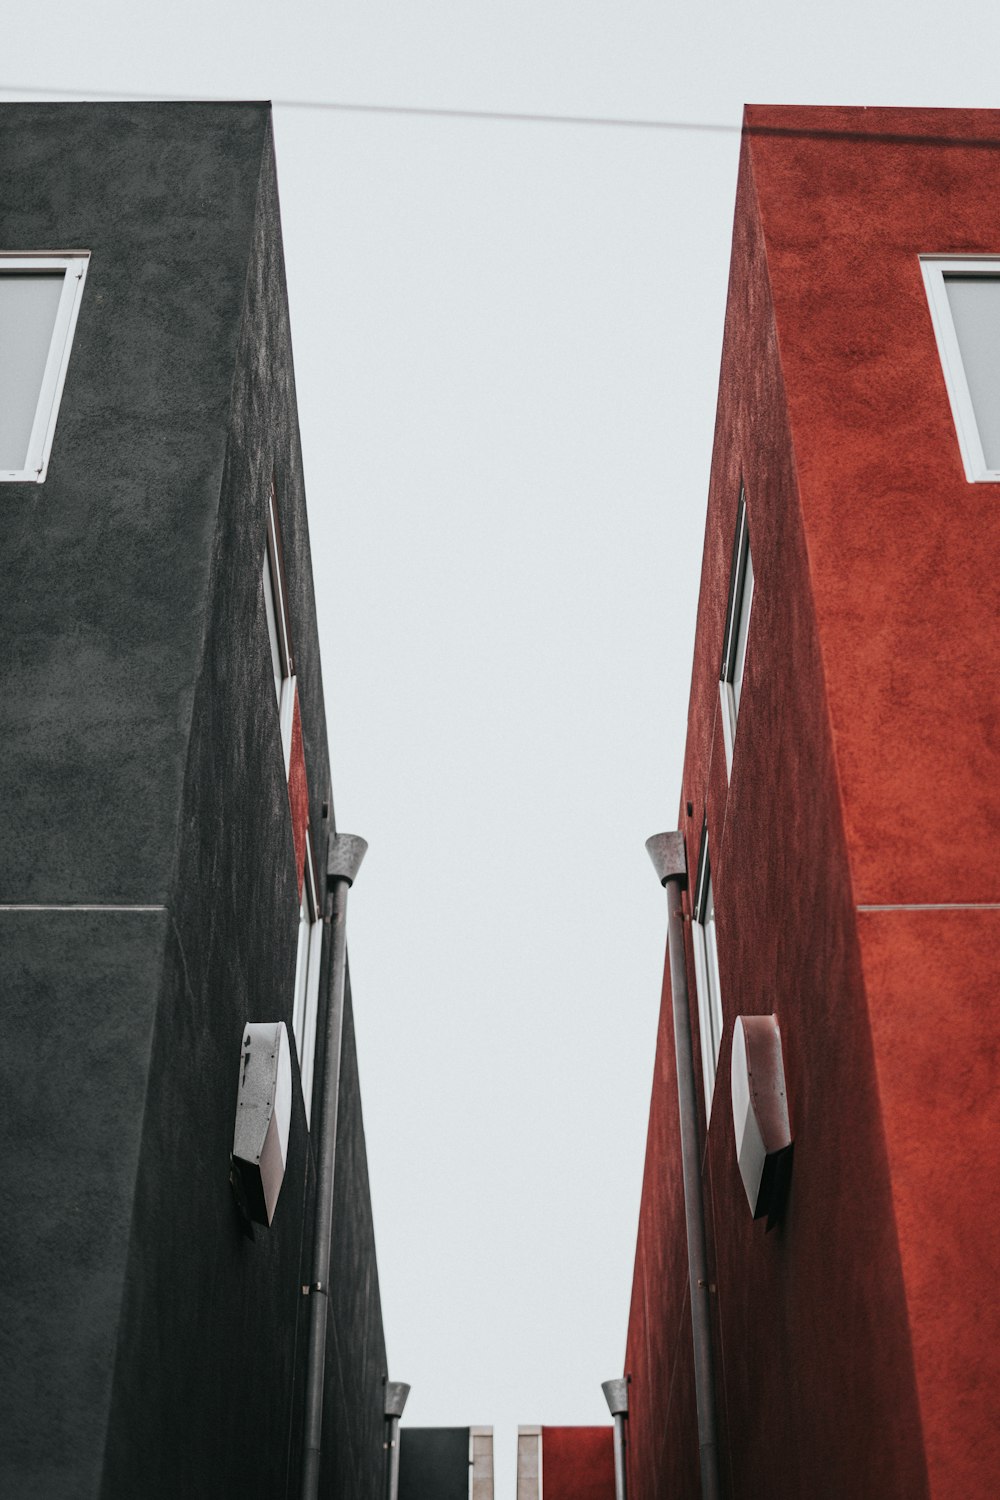 黒と赤のコンクリートの建物2棟のローアングル写真